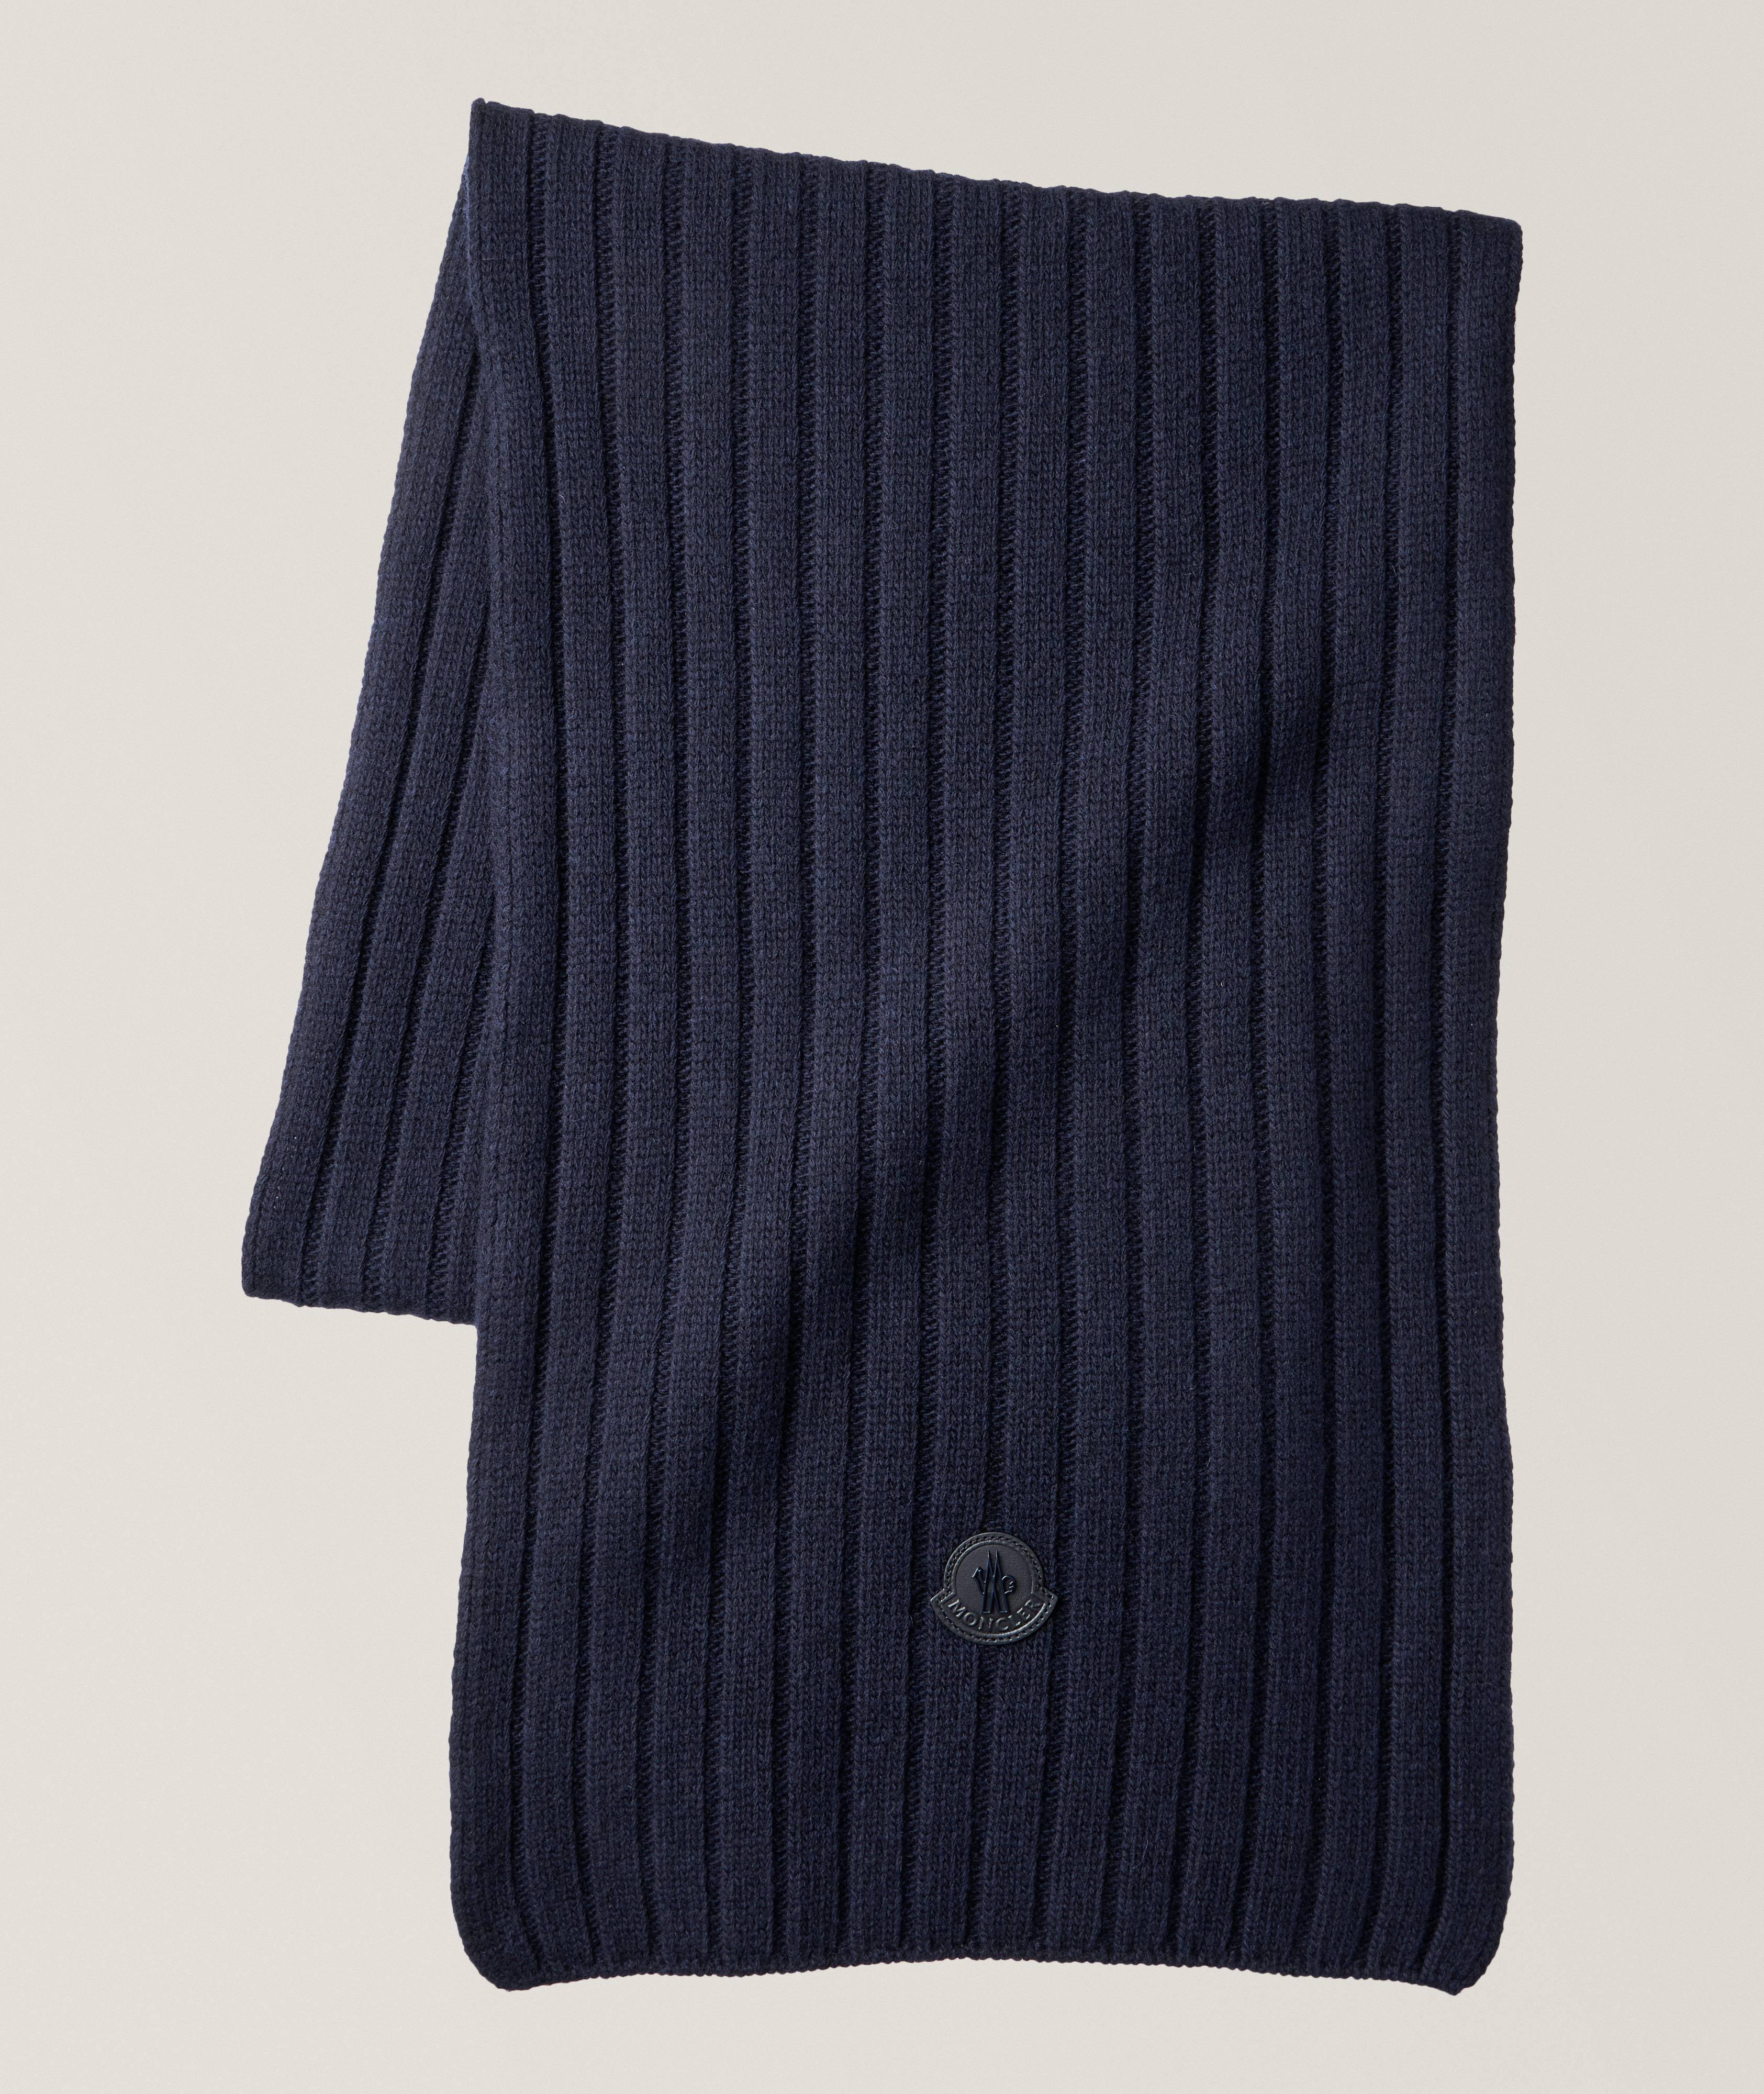 Écharpe Sciarpa en tricot côtelé de laine image 0